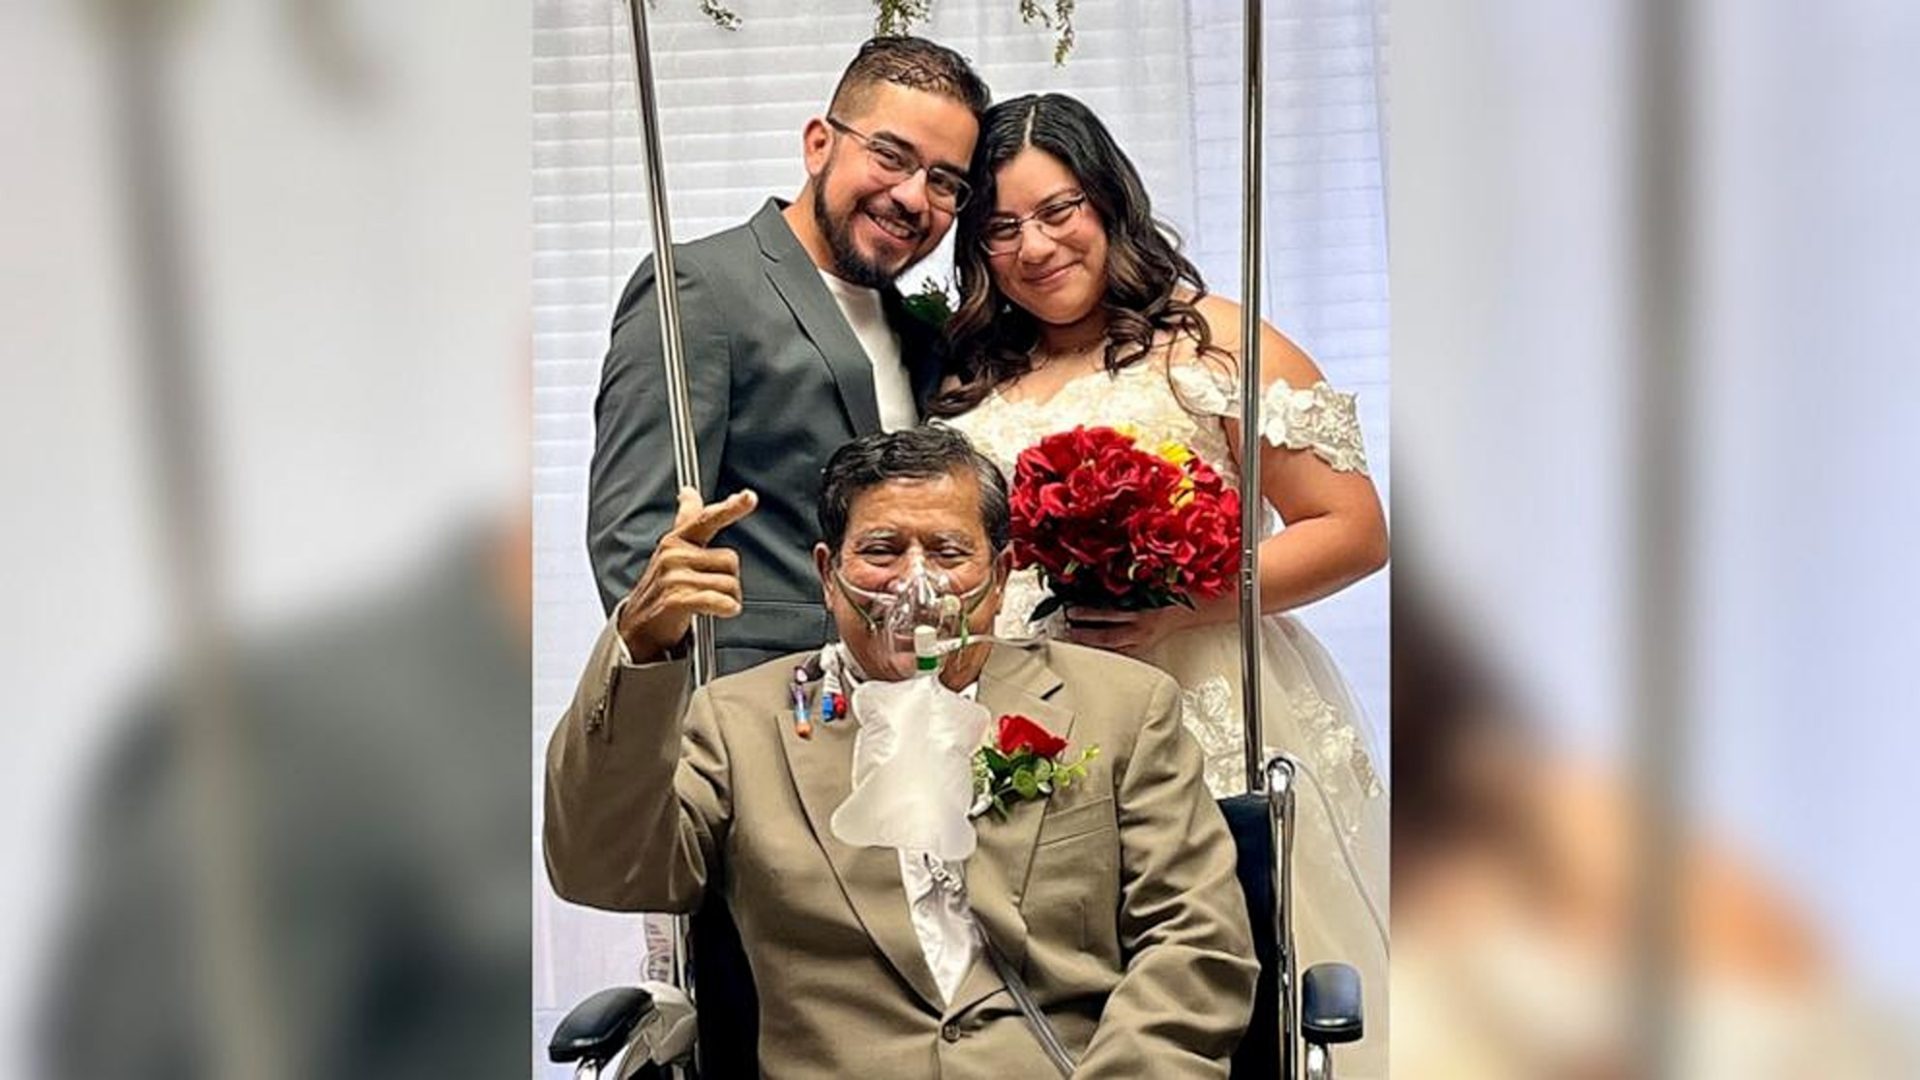 Bolnica organizirala vjenčanje kako bi umirući otac mogao gledati svoju kćer kako kaže 